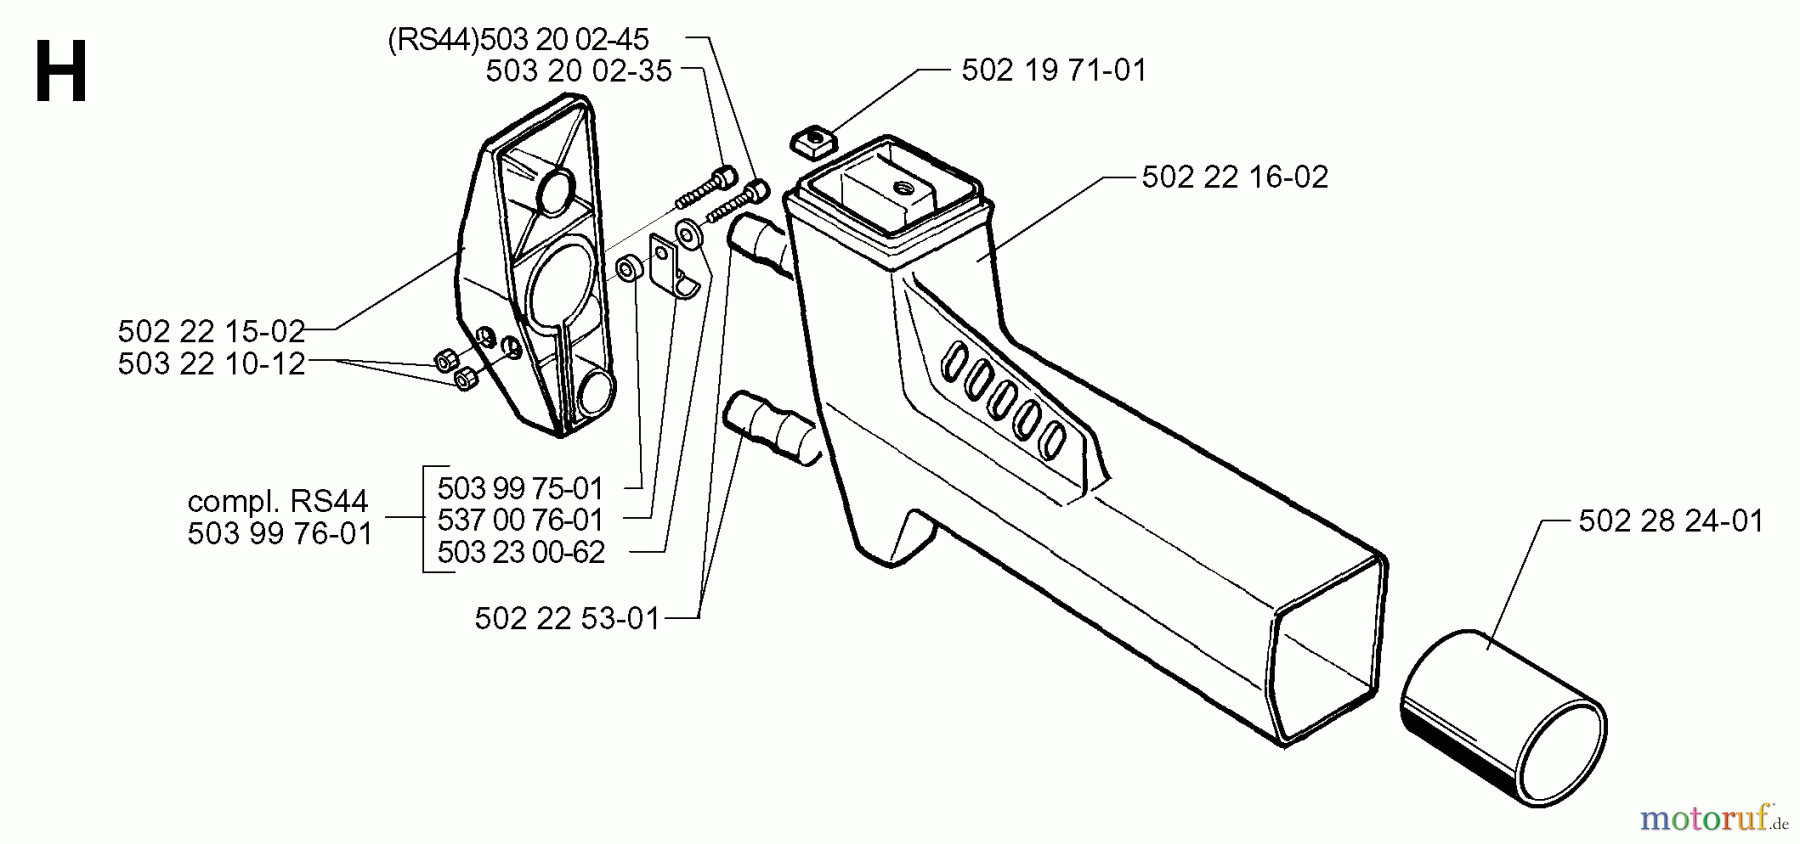  Jonsered Motorsensen, Trimmer RS44 - Jonsered String/Brush Trimmer (1998-06) TOWER